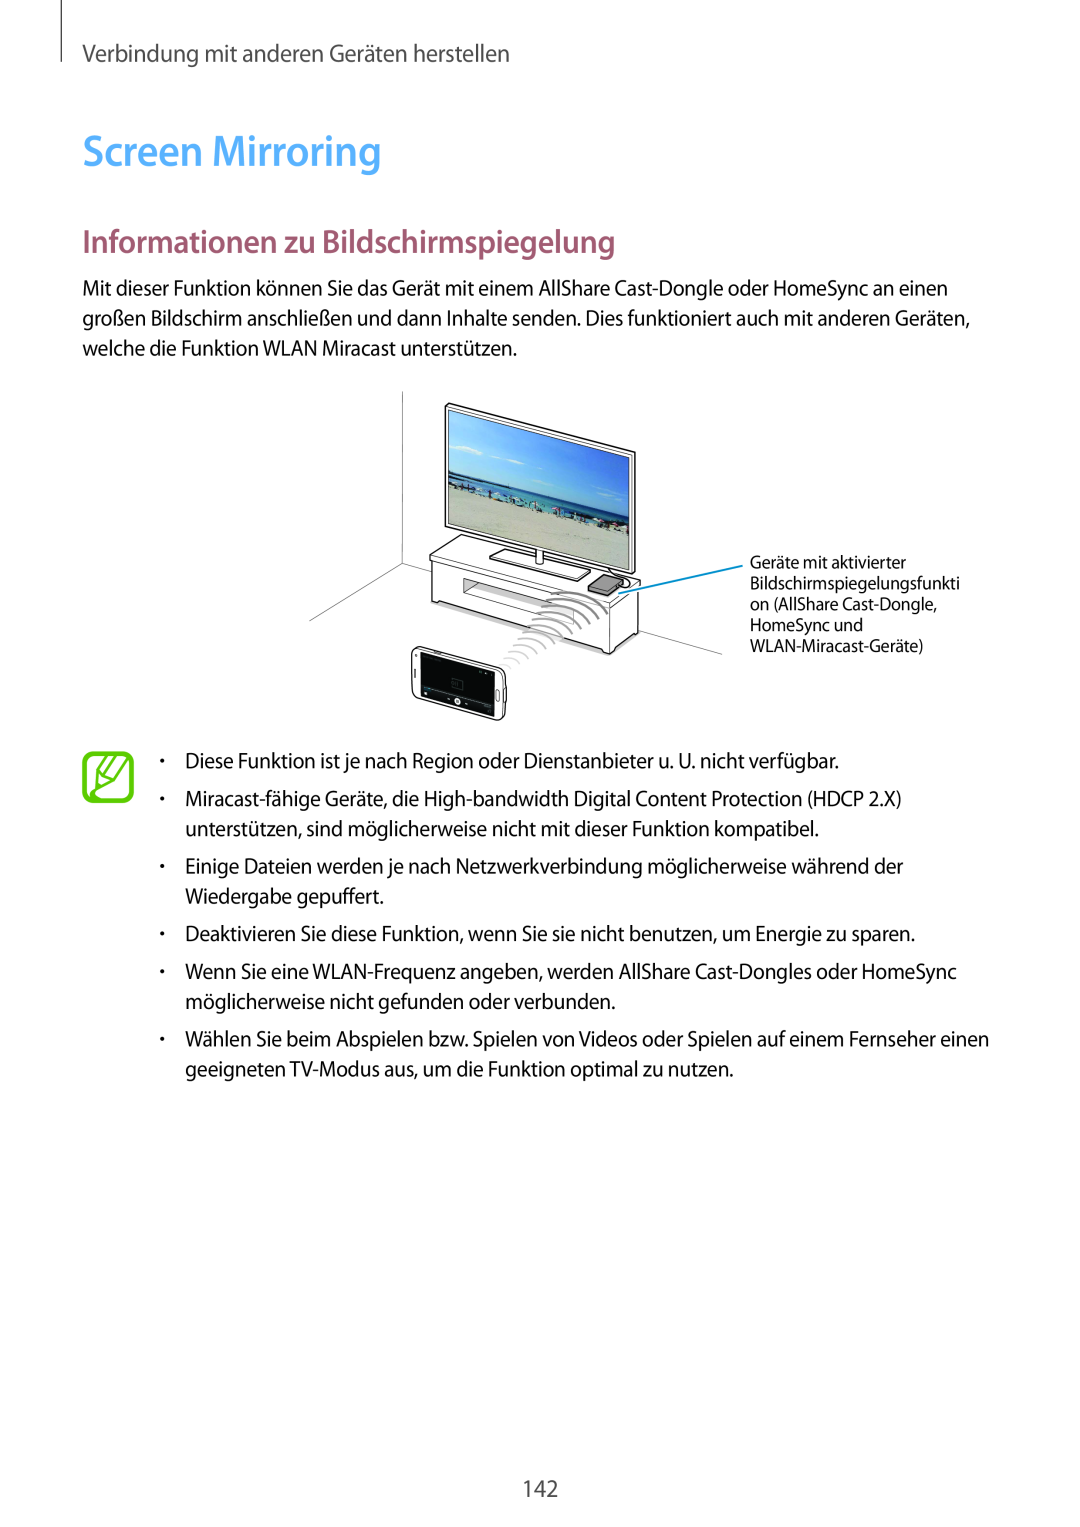 Samsung SM-G901FZWADTM Screen Mirroring, Informationen zu Bildschirmspiegelung, Verbindung mit anderen Geräten herstellen 